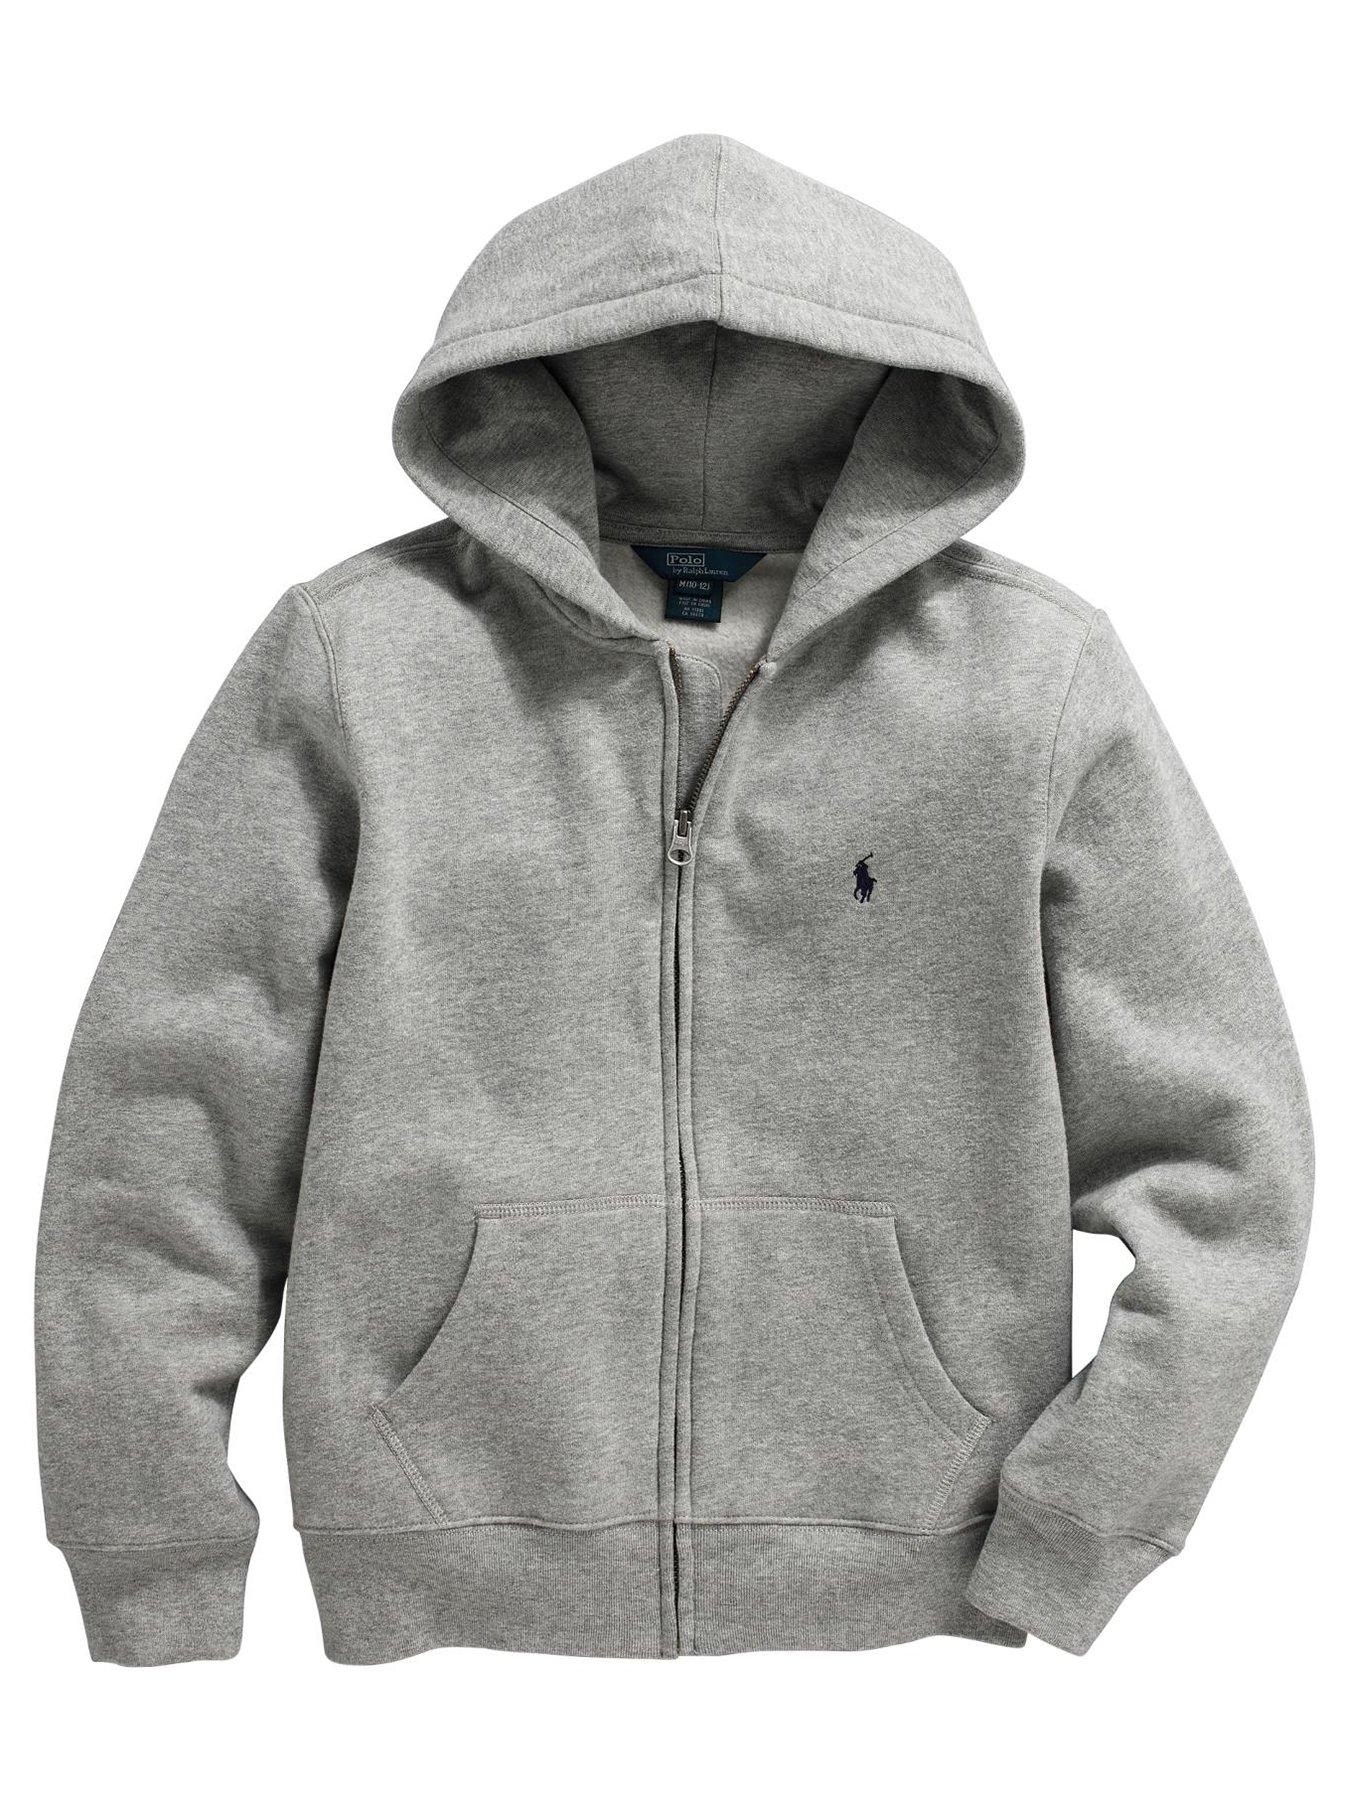 ralph lauren zip up hoodie grey